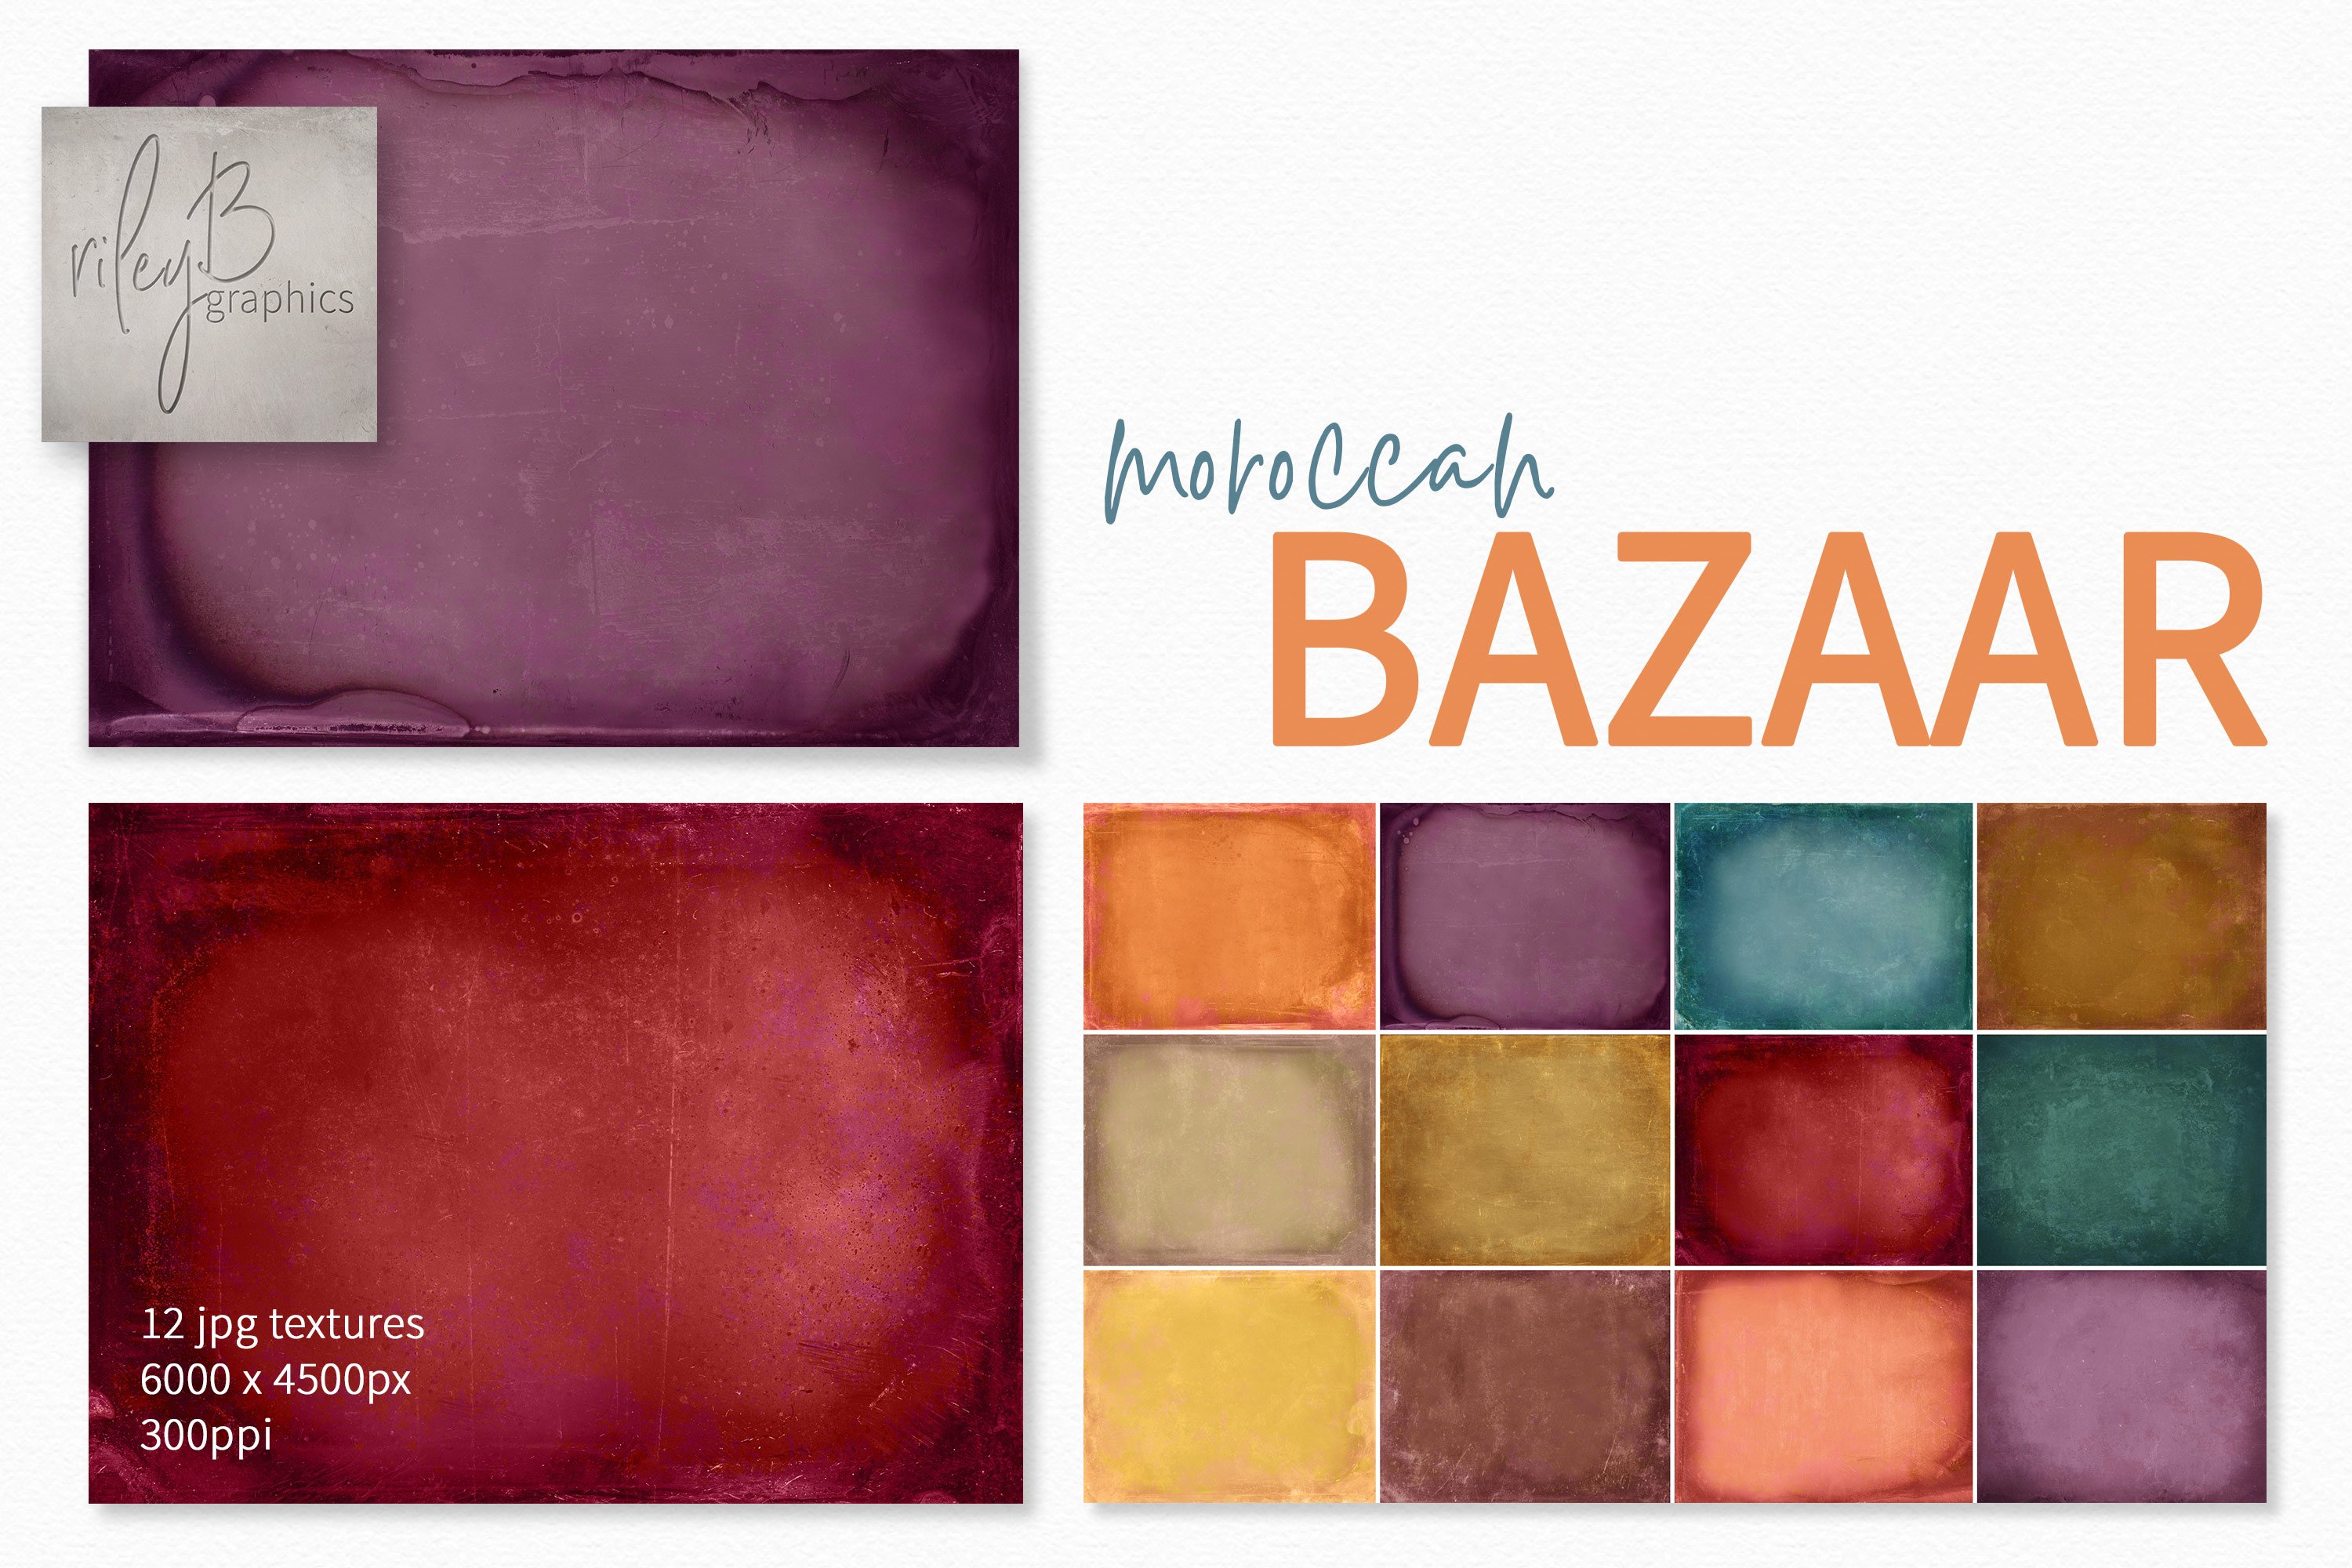 Moroccan Bazaar Textures cover image.